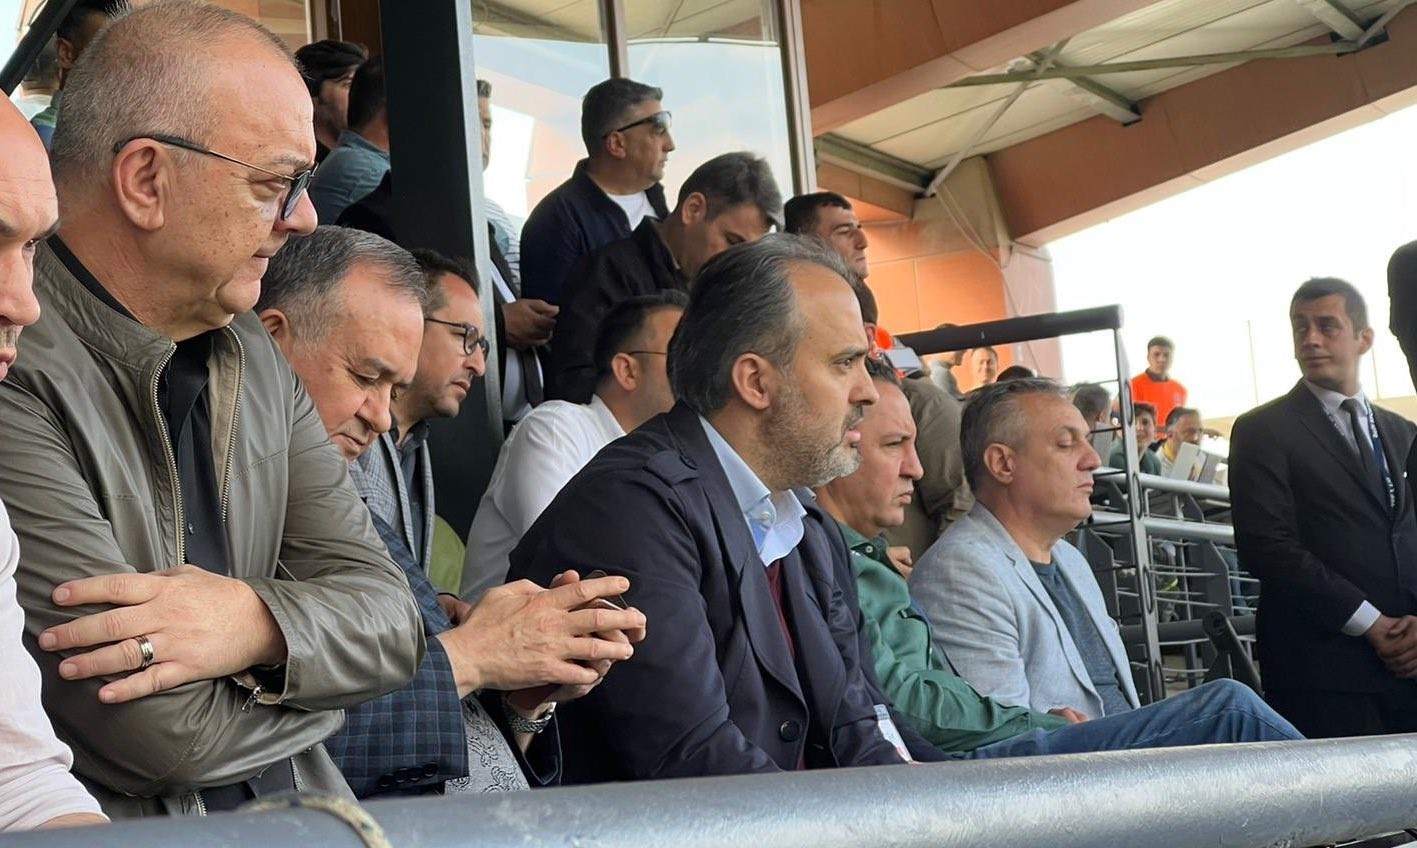 Bursaspor’un Manisa FK’yı 3-1 mağlup ettiği maçta tribünde bulunan Bursa Büyükşehir Belediye Başkanı Alinur Aktaş, karşılaşma sonrası, “Çok ...